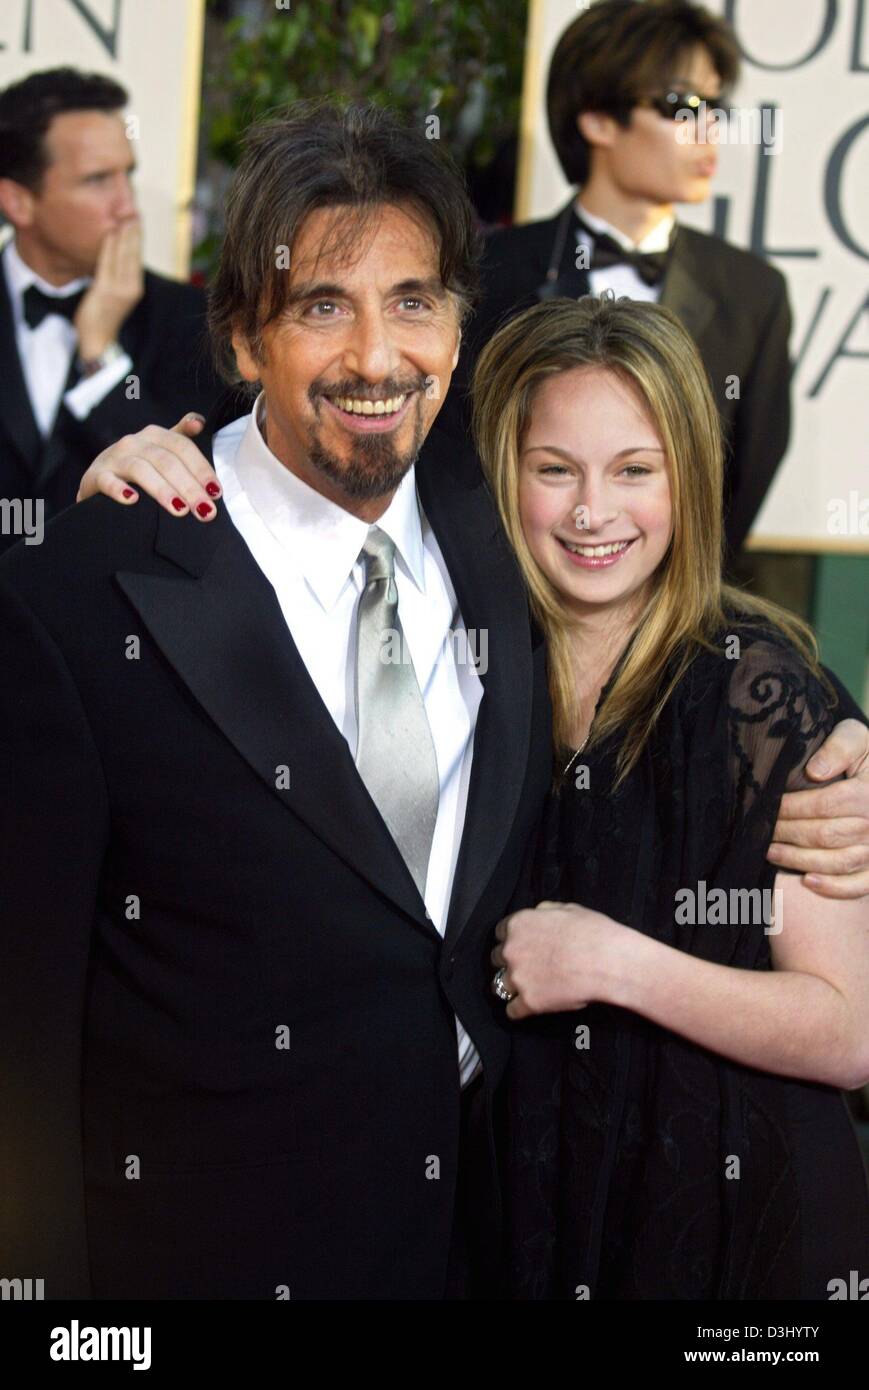 (Dpa) - US-Schauspieler Al Pacino und seine Tochter Julie Marie bei ihrer Ankunft bei den Golden Globes Award in Beverly Hills, USA, 25. Januar 2004 Lächeln. Pacino erhielt eine Auszeichnung für seine Rolle in dem Fernsehfilm "Angels in America". Stockfoto